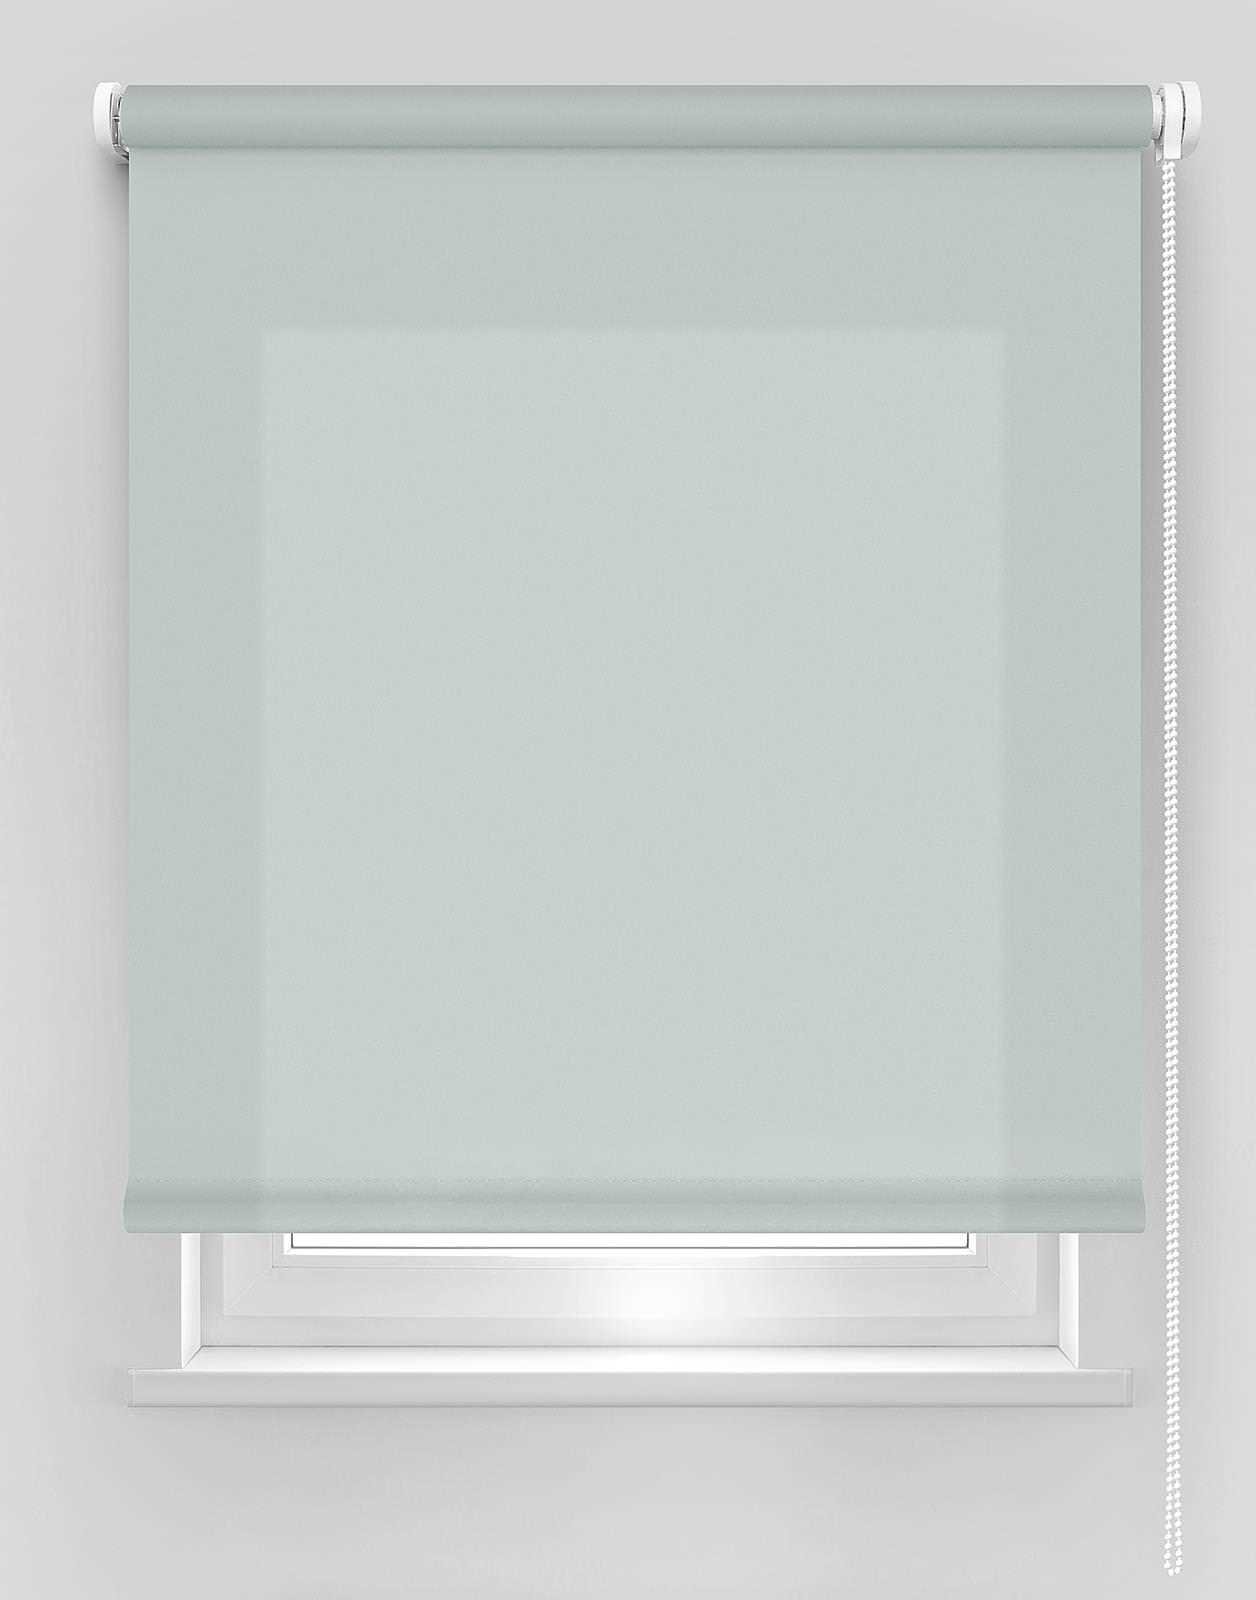 Klasikinė ritininė užuolaida DEKORIKA, pilkos sp., Ø 25 mm, 240 x 175 cm, 100 % PES